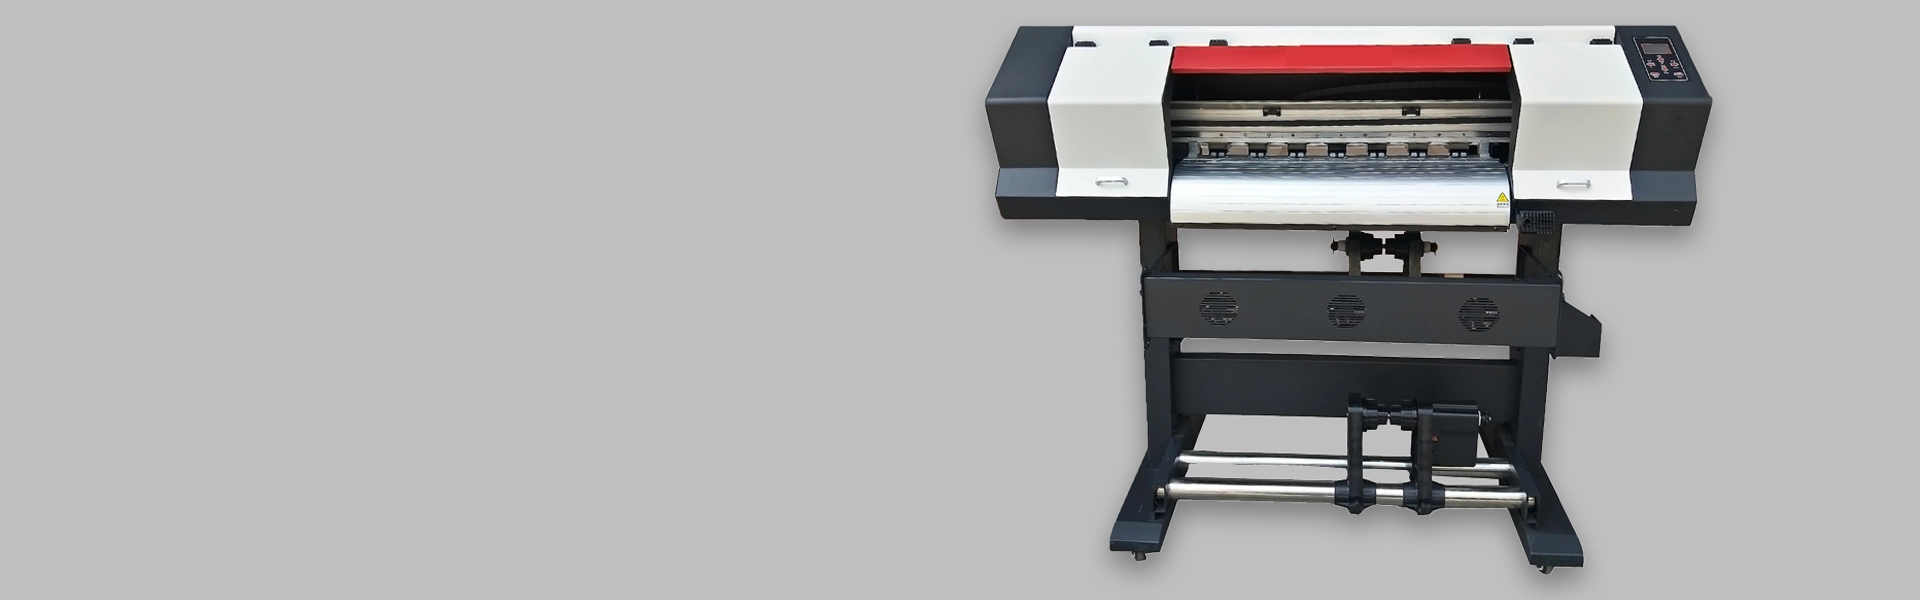 Принтер XP600 70 см